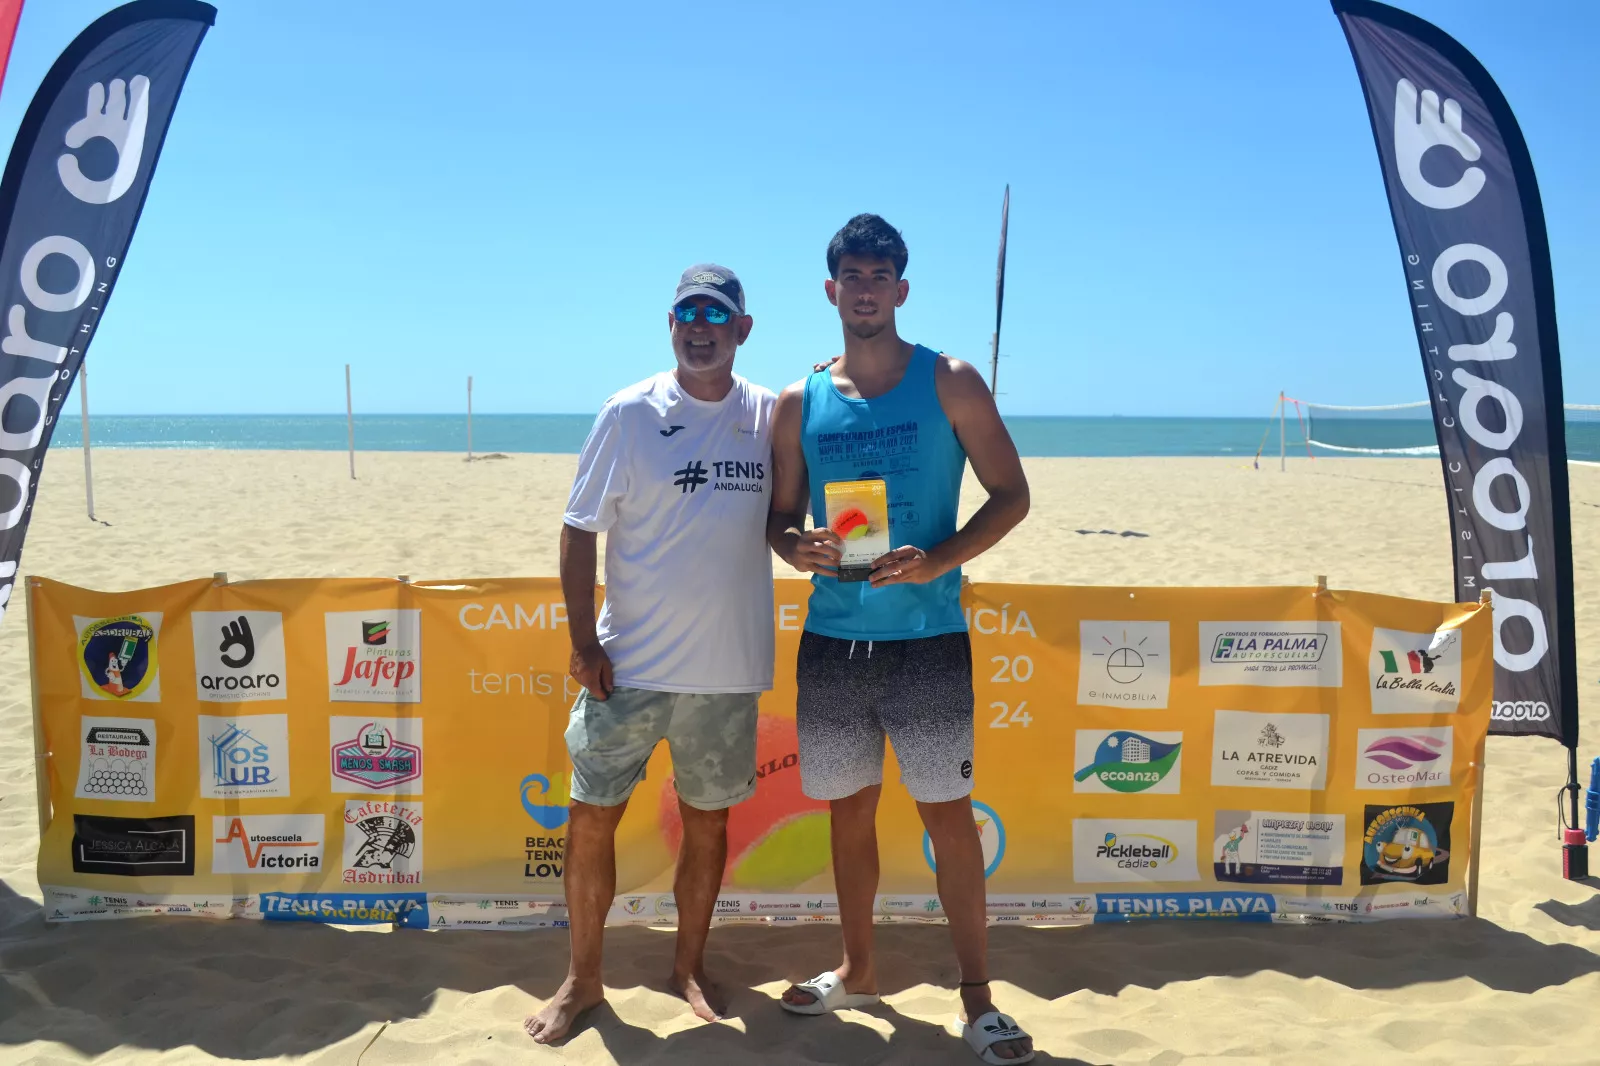 El torneo andaluz de tenis playa se ha celebrado en la playa Victoria de Cádiz